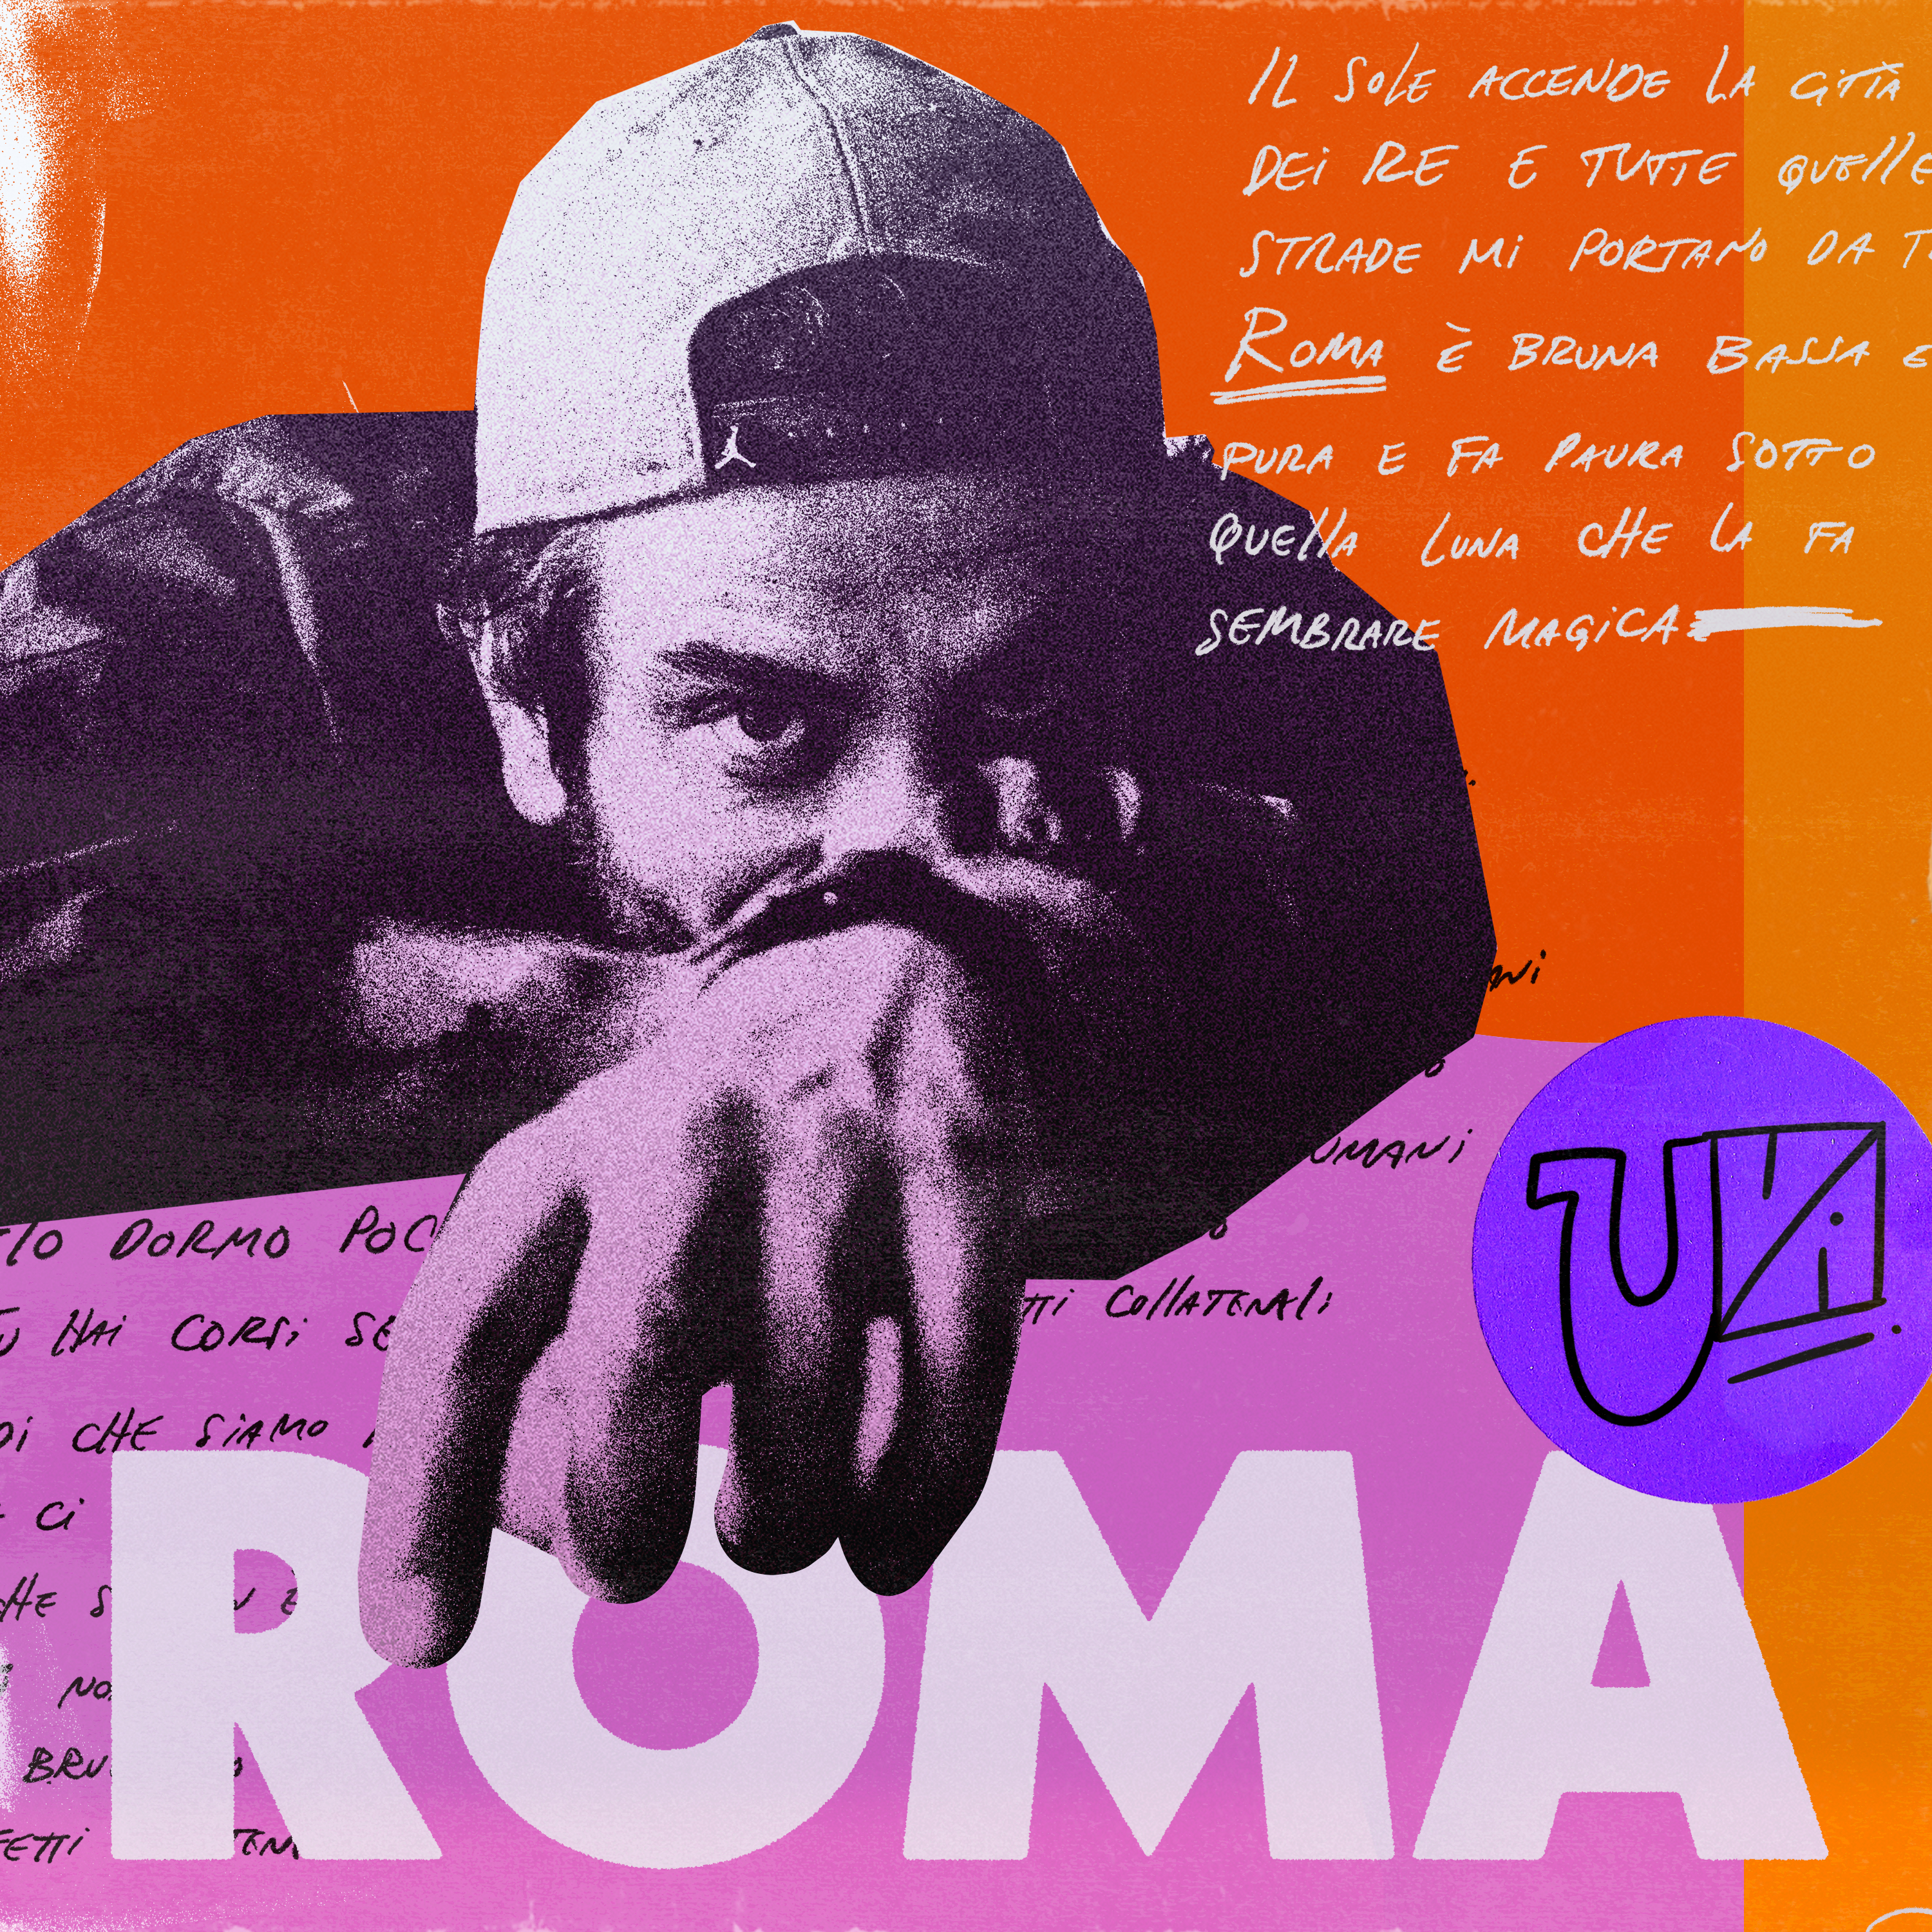 ROMA: il nuovo singolo di UVA disponibile su tutte le piattaforme digitali dal 18 giugno 